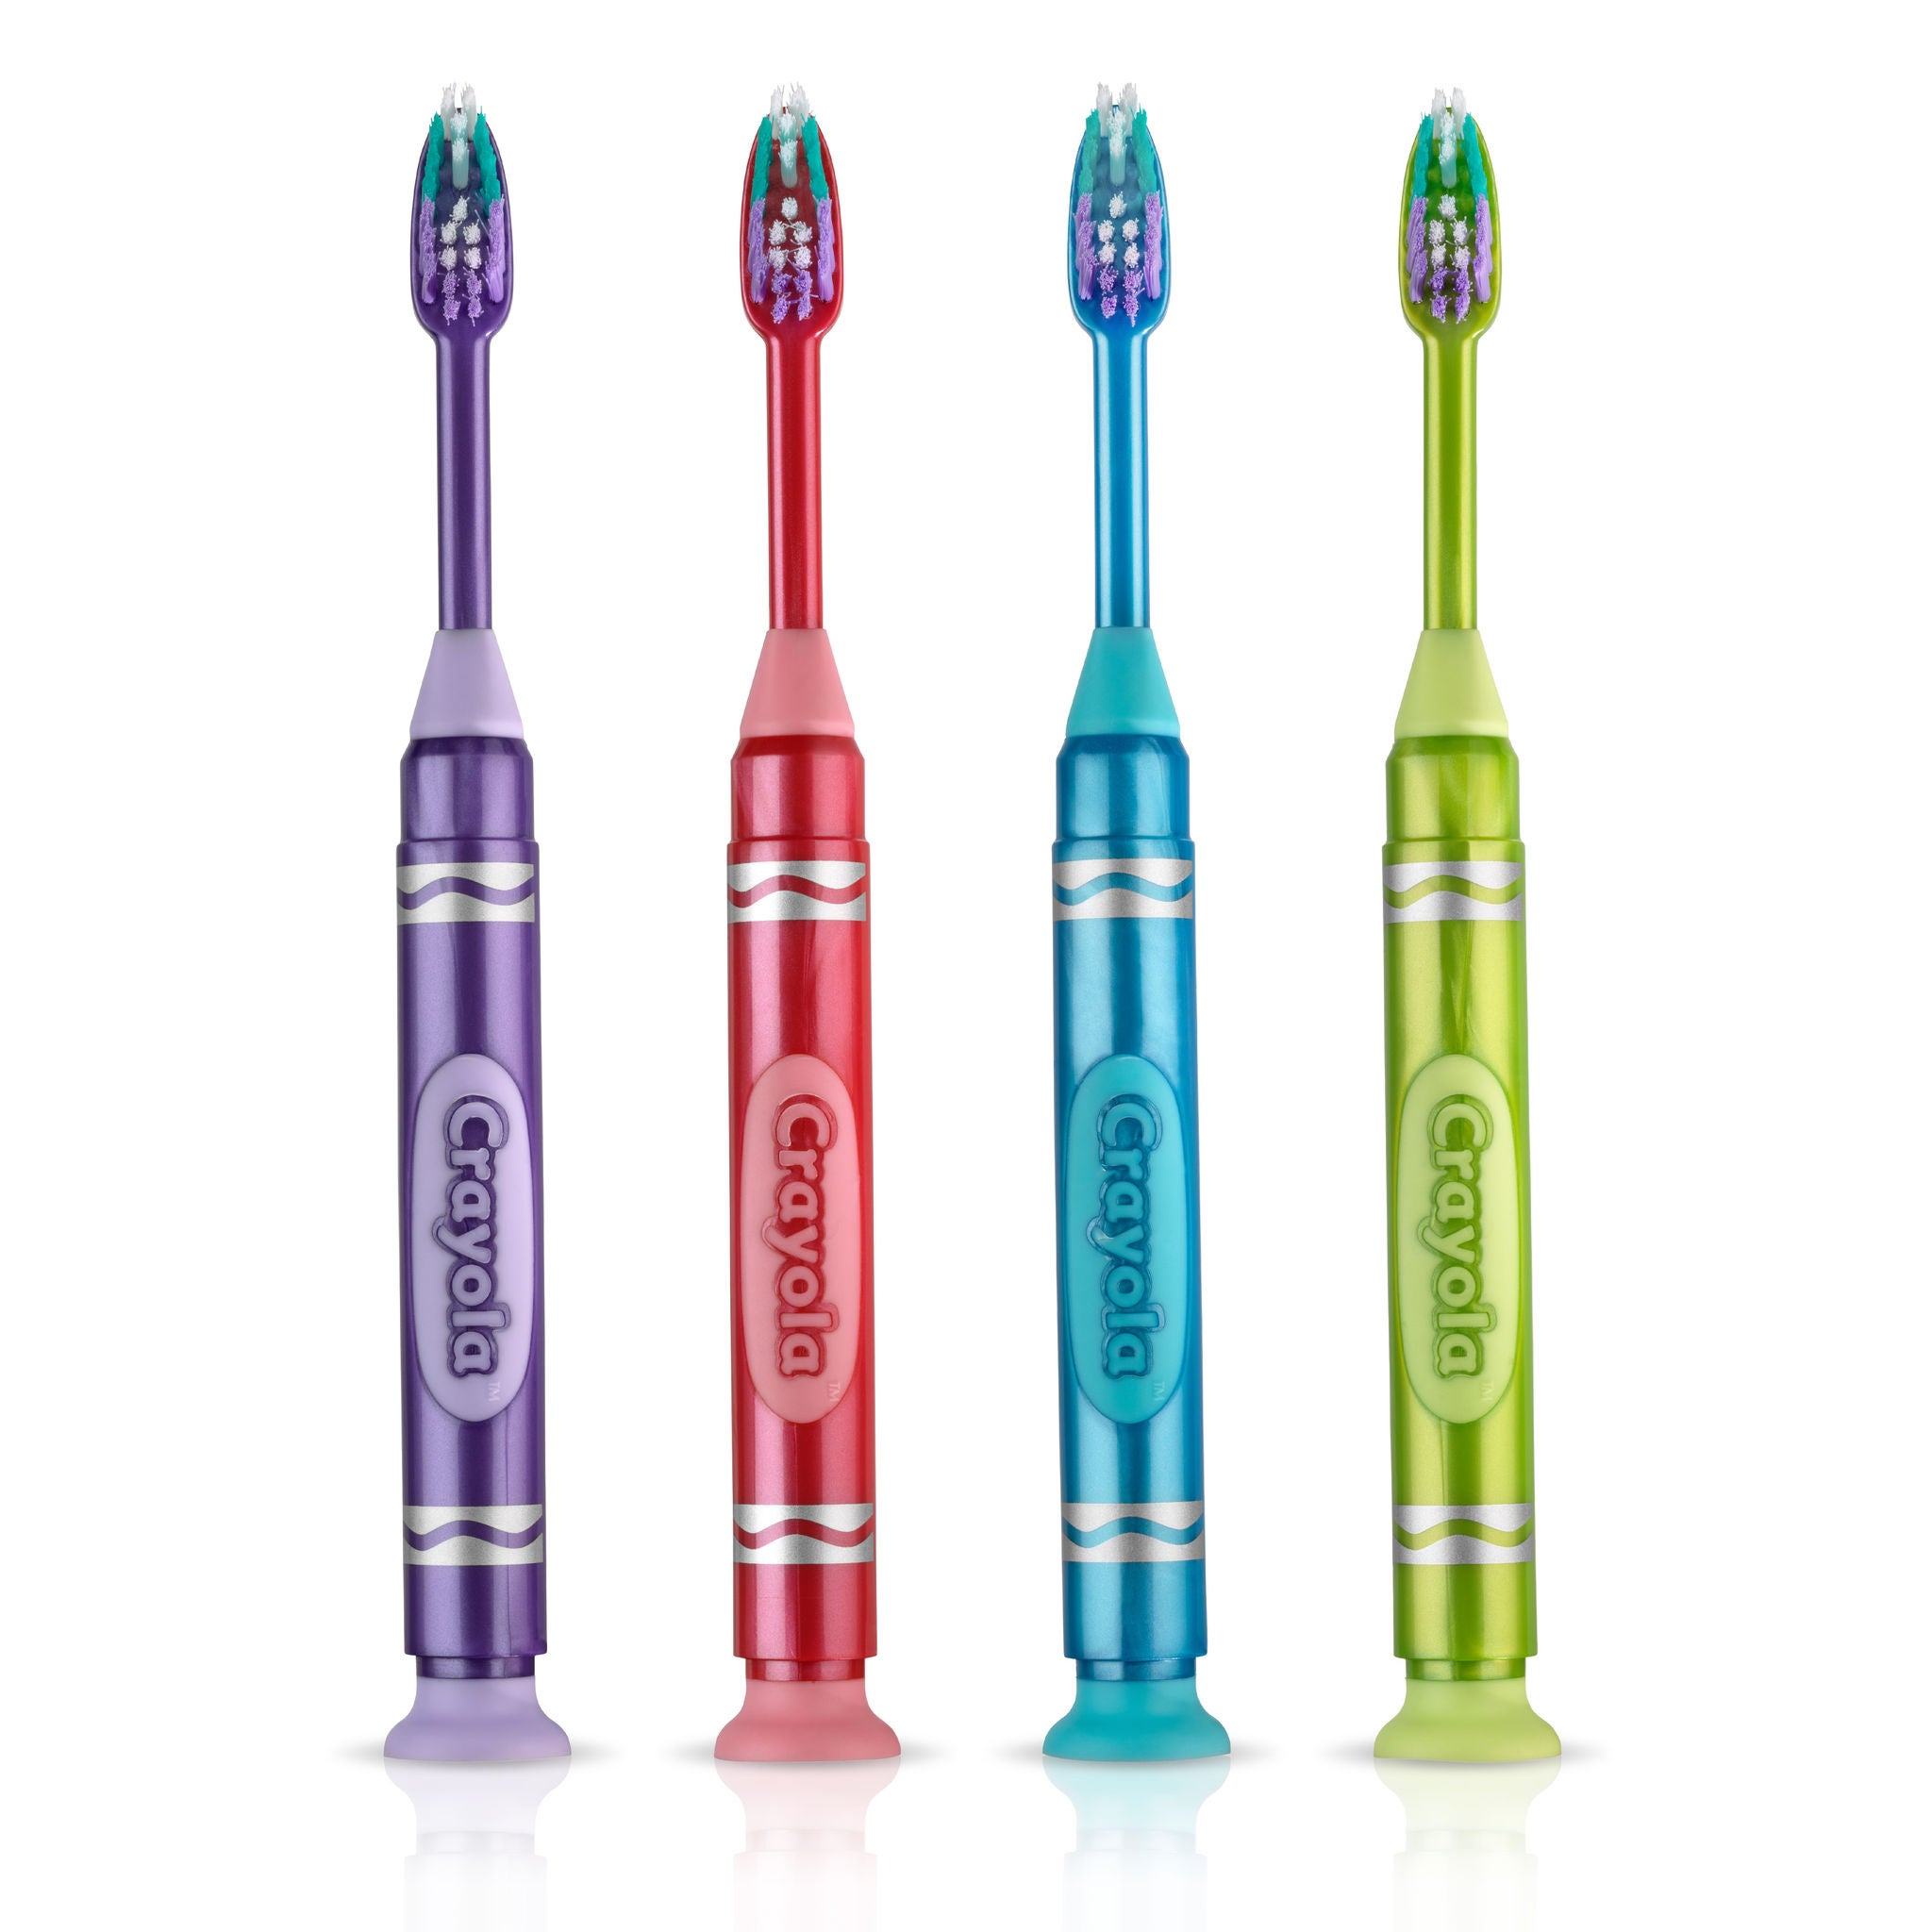 227-Product-Toothbrush-Manual-Crayola-Marker-Metallic-naked-Image1.jpg